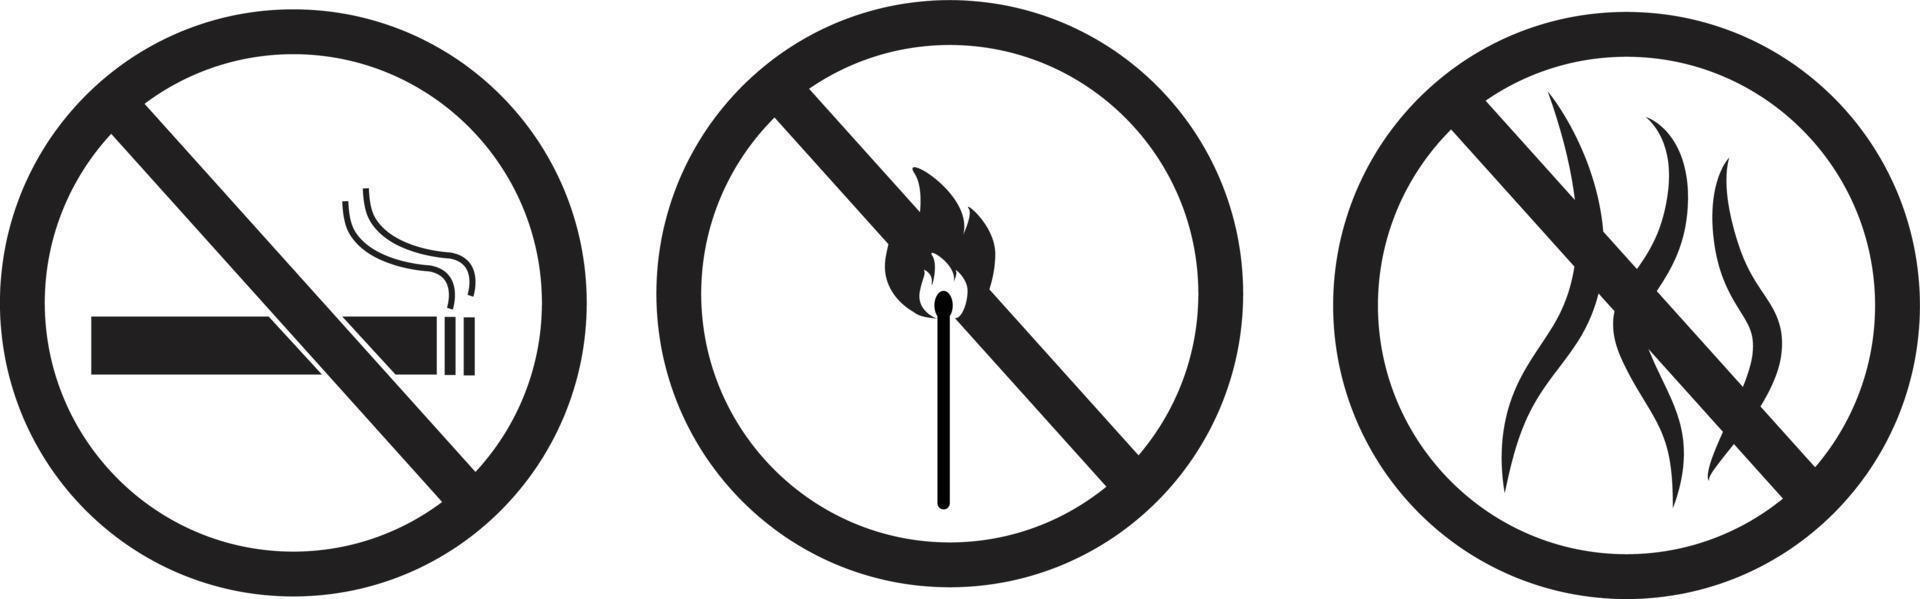 Señal prohibido fumar y encender fuego y pictograma